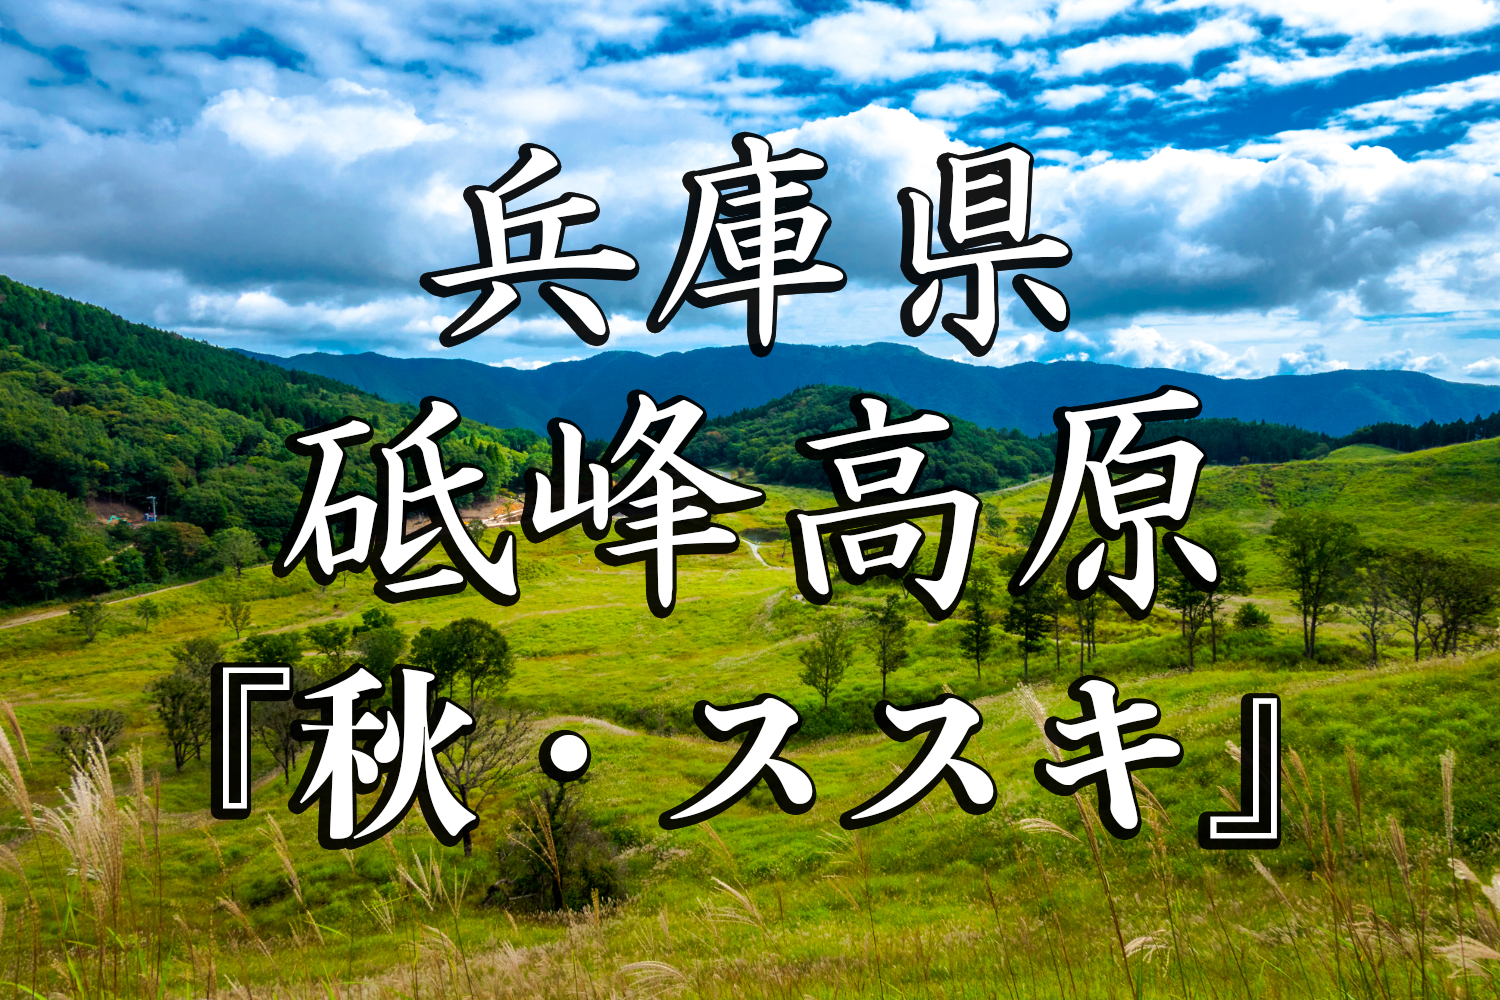 兵庫県 砥峰高原 一面ススキの草原が広がる絶景の高原写真スポット 撮影した写真の紹介 アクセス情報や撮影ポイントなど 写真や映像で紹介する 関西 近畿の絶景カメラ 観光スポット